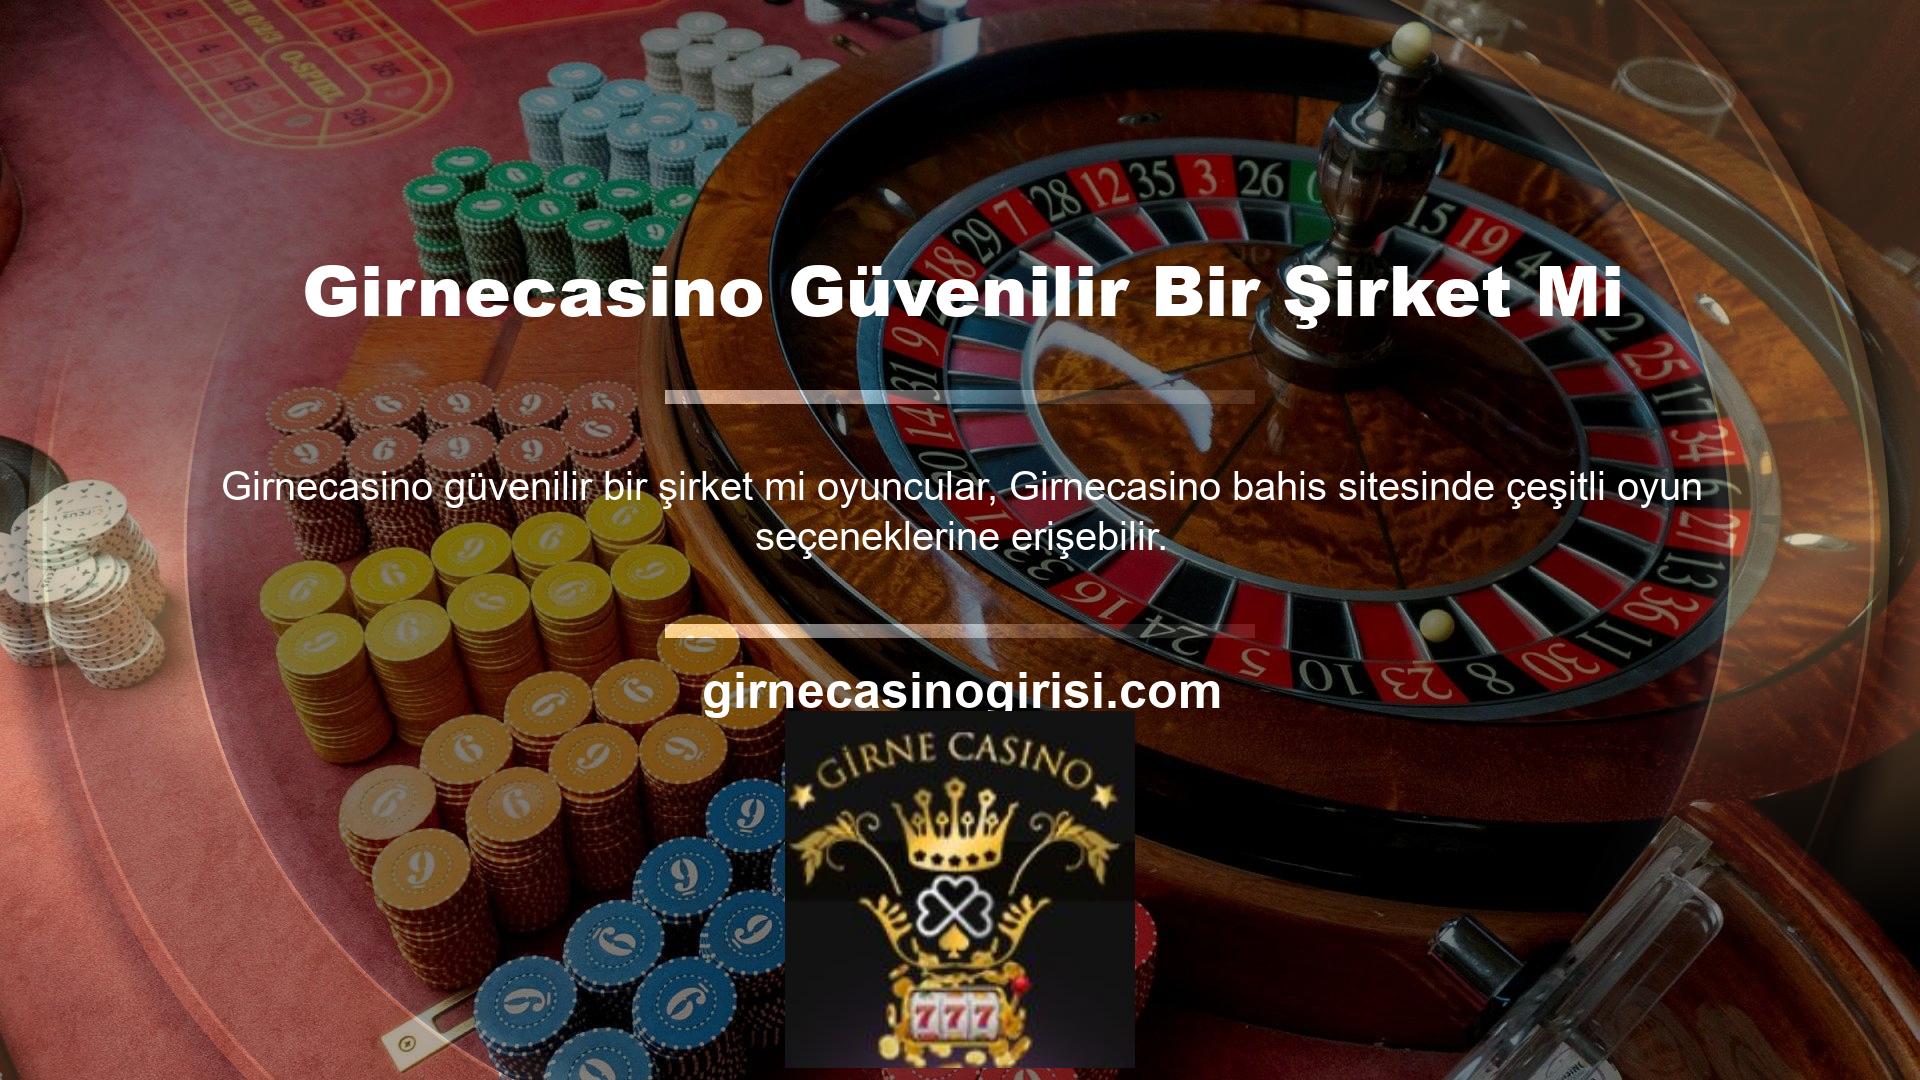 Casino siteleri, çevrimiçi platformların terk edildiği durumlardan biridir